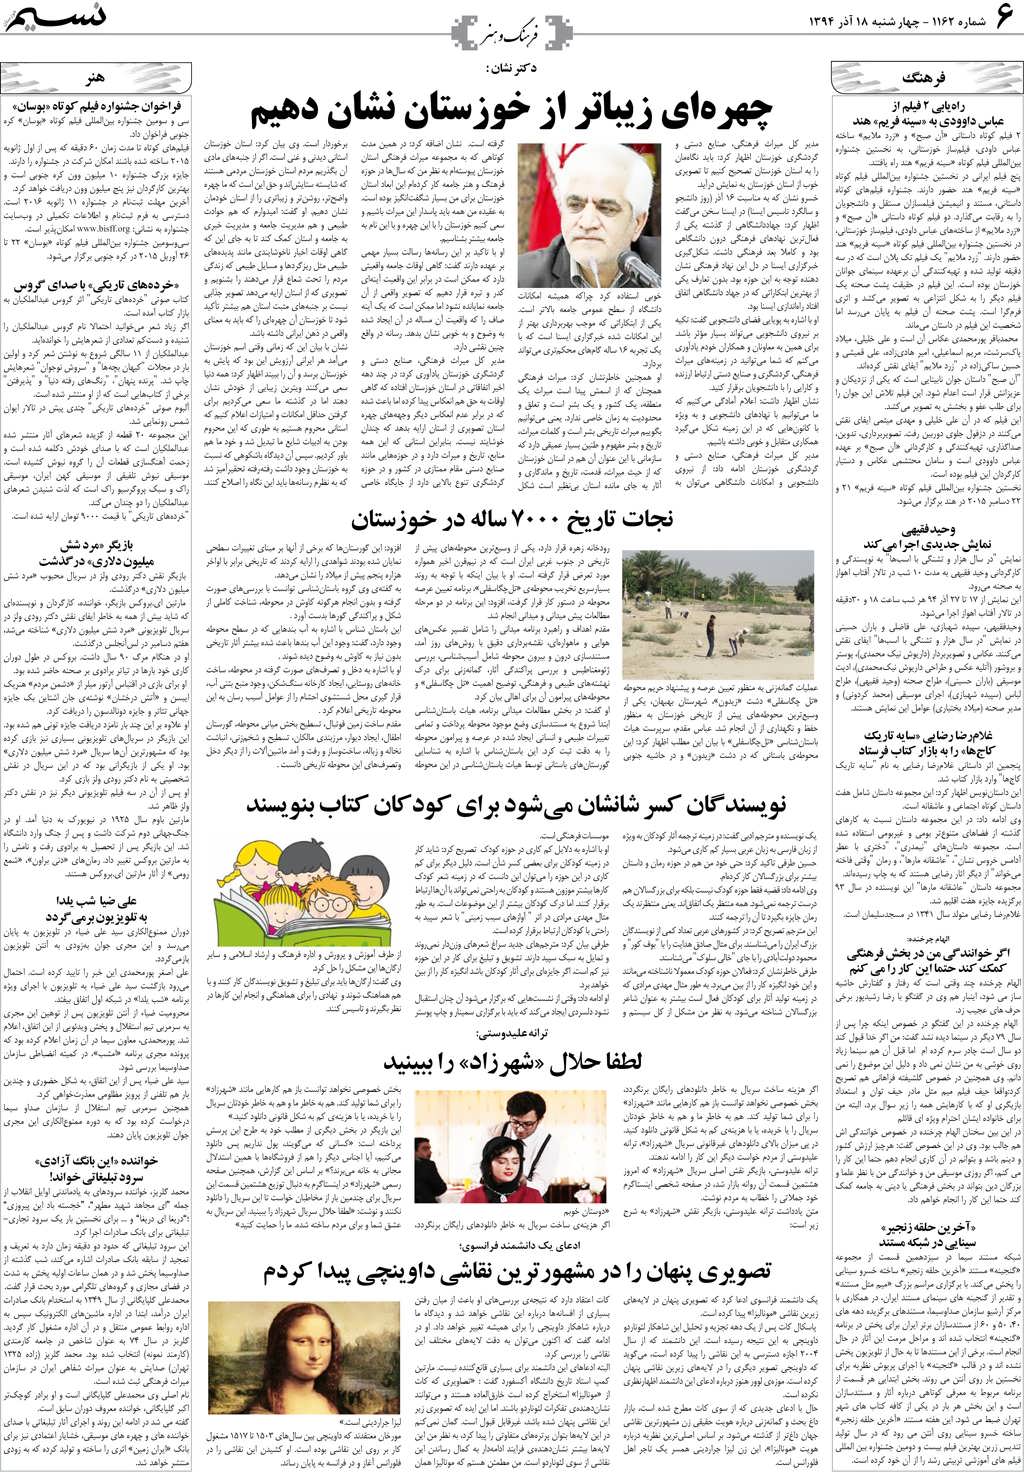 صفحه فرهنگ و هنر روزنامه نسیم شماره 1162